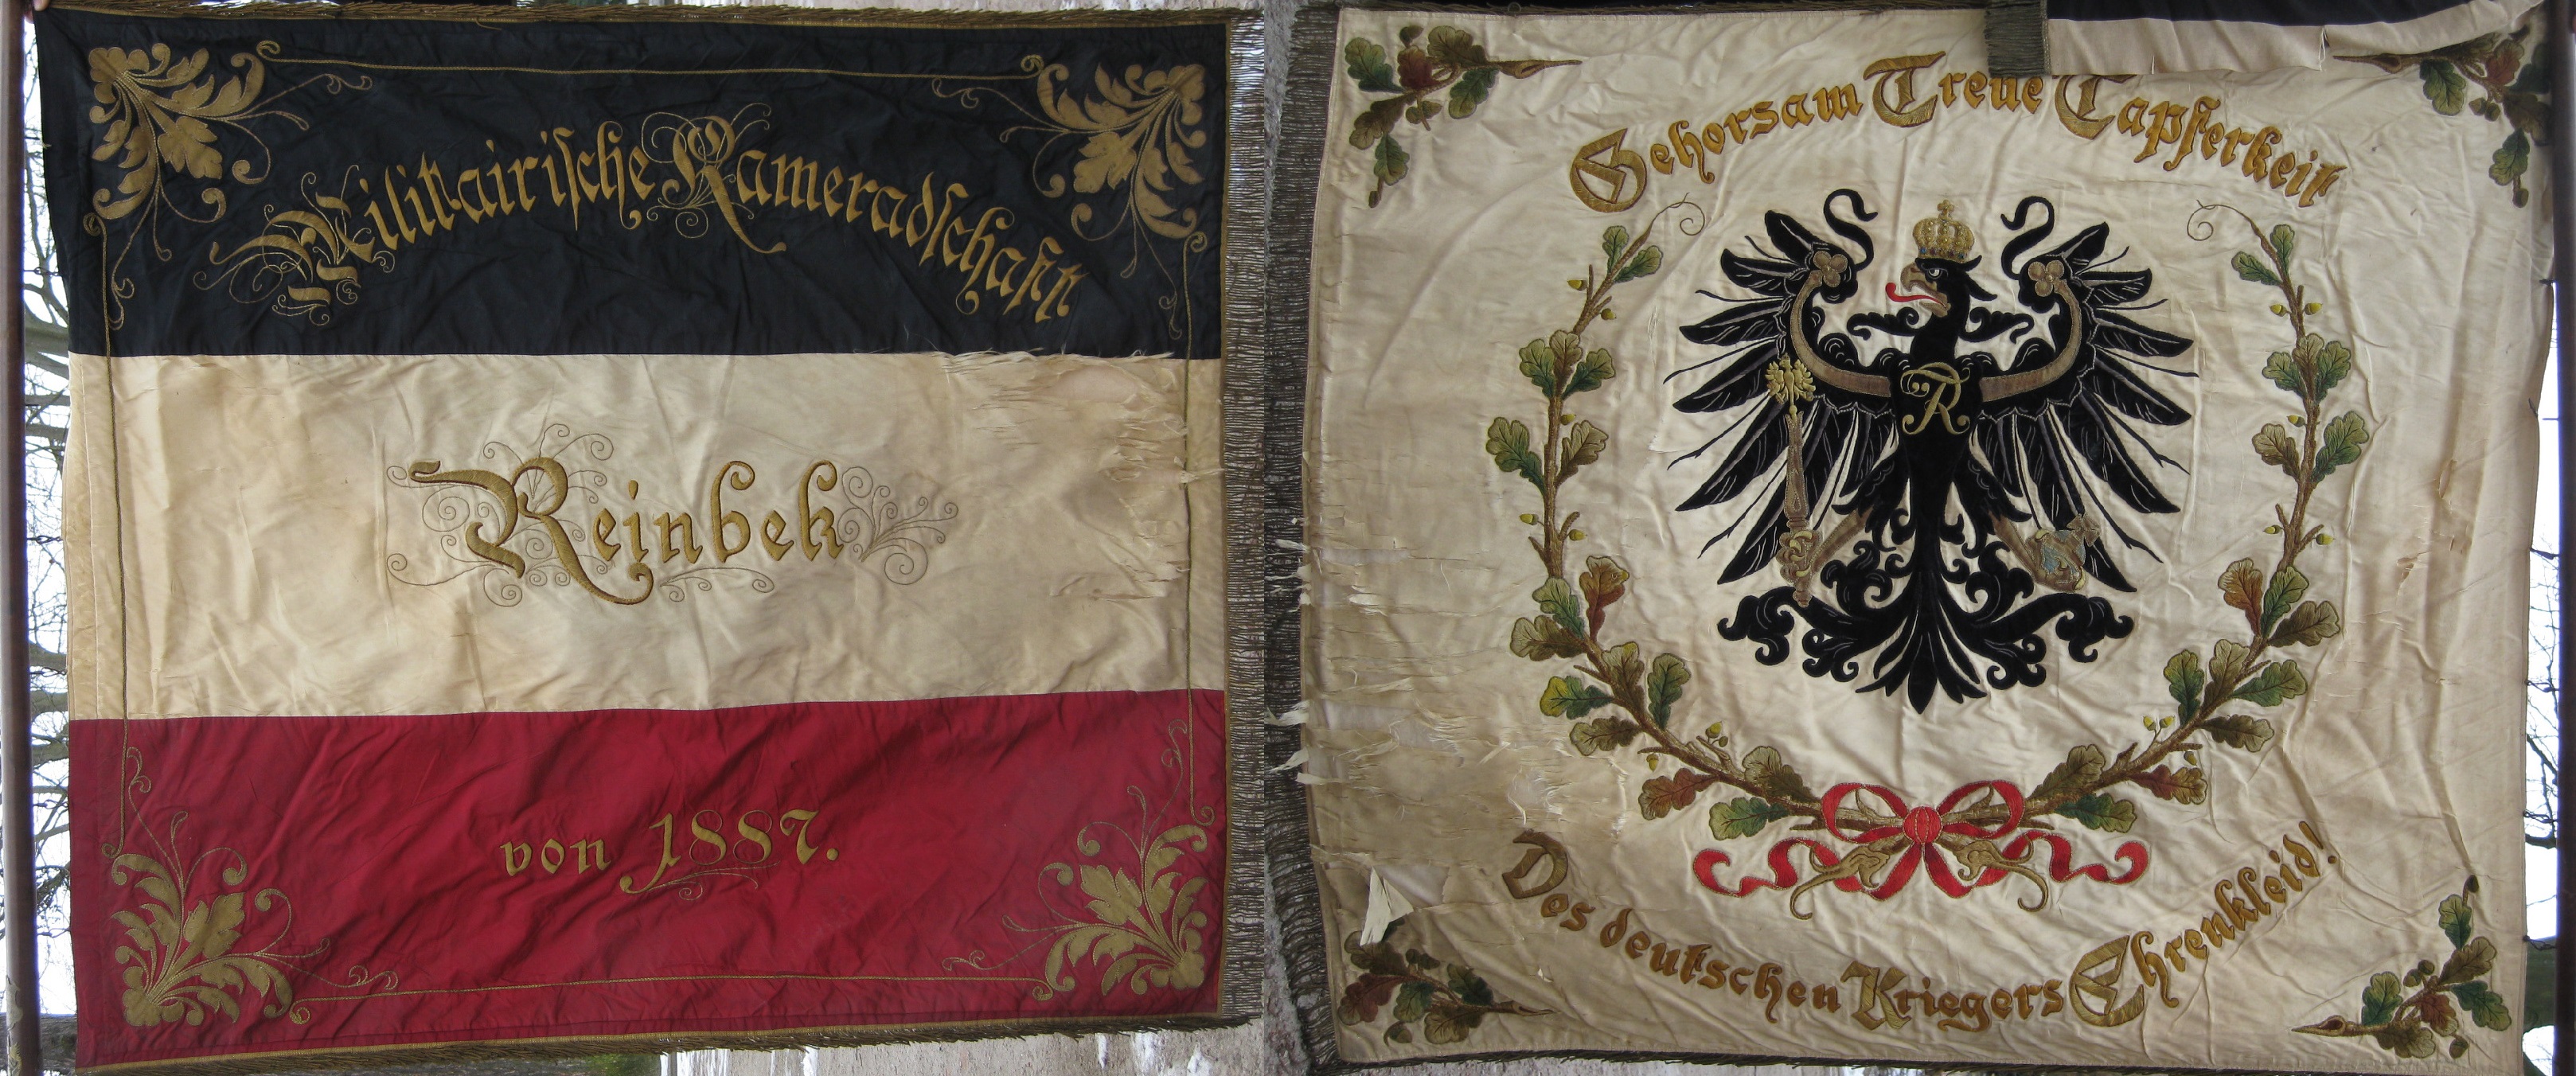 Vorderseite: "Militairische Kameradschaft Reinbek 1887". Rückseite: "Gehorsam Treue Tapferkeit Des deutschen Kriegers Ehrenkleid" 